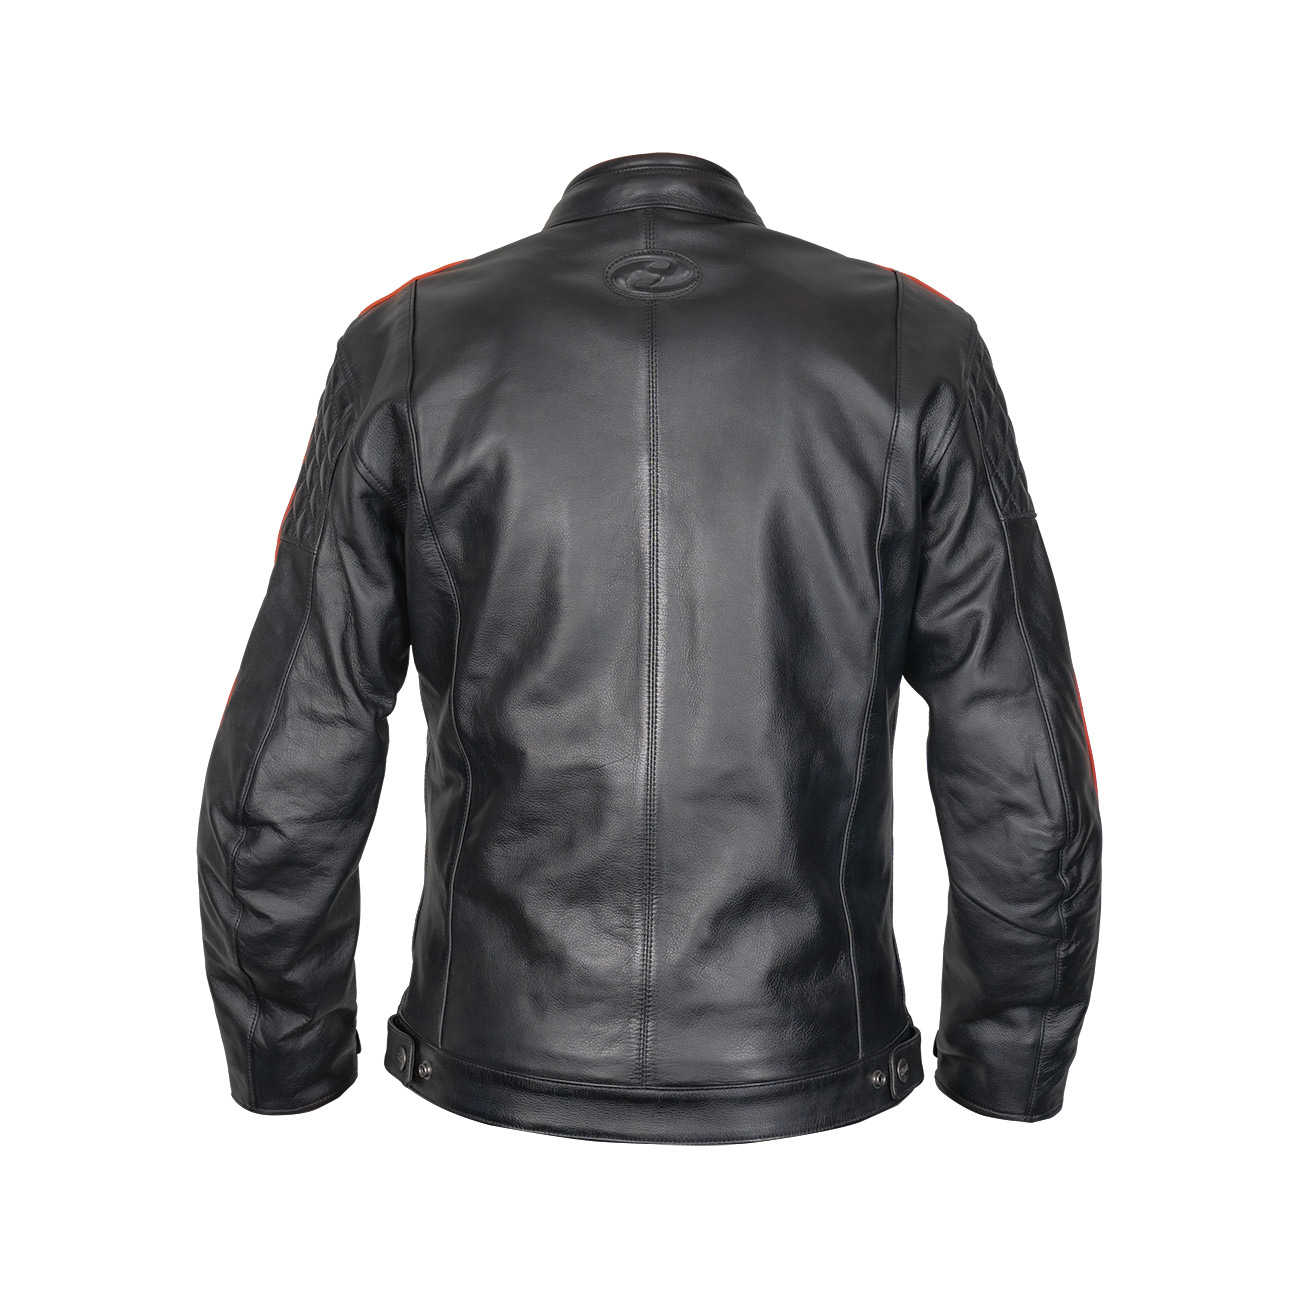 Brixham leather jacket